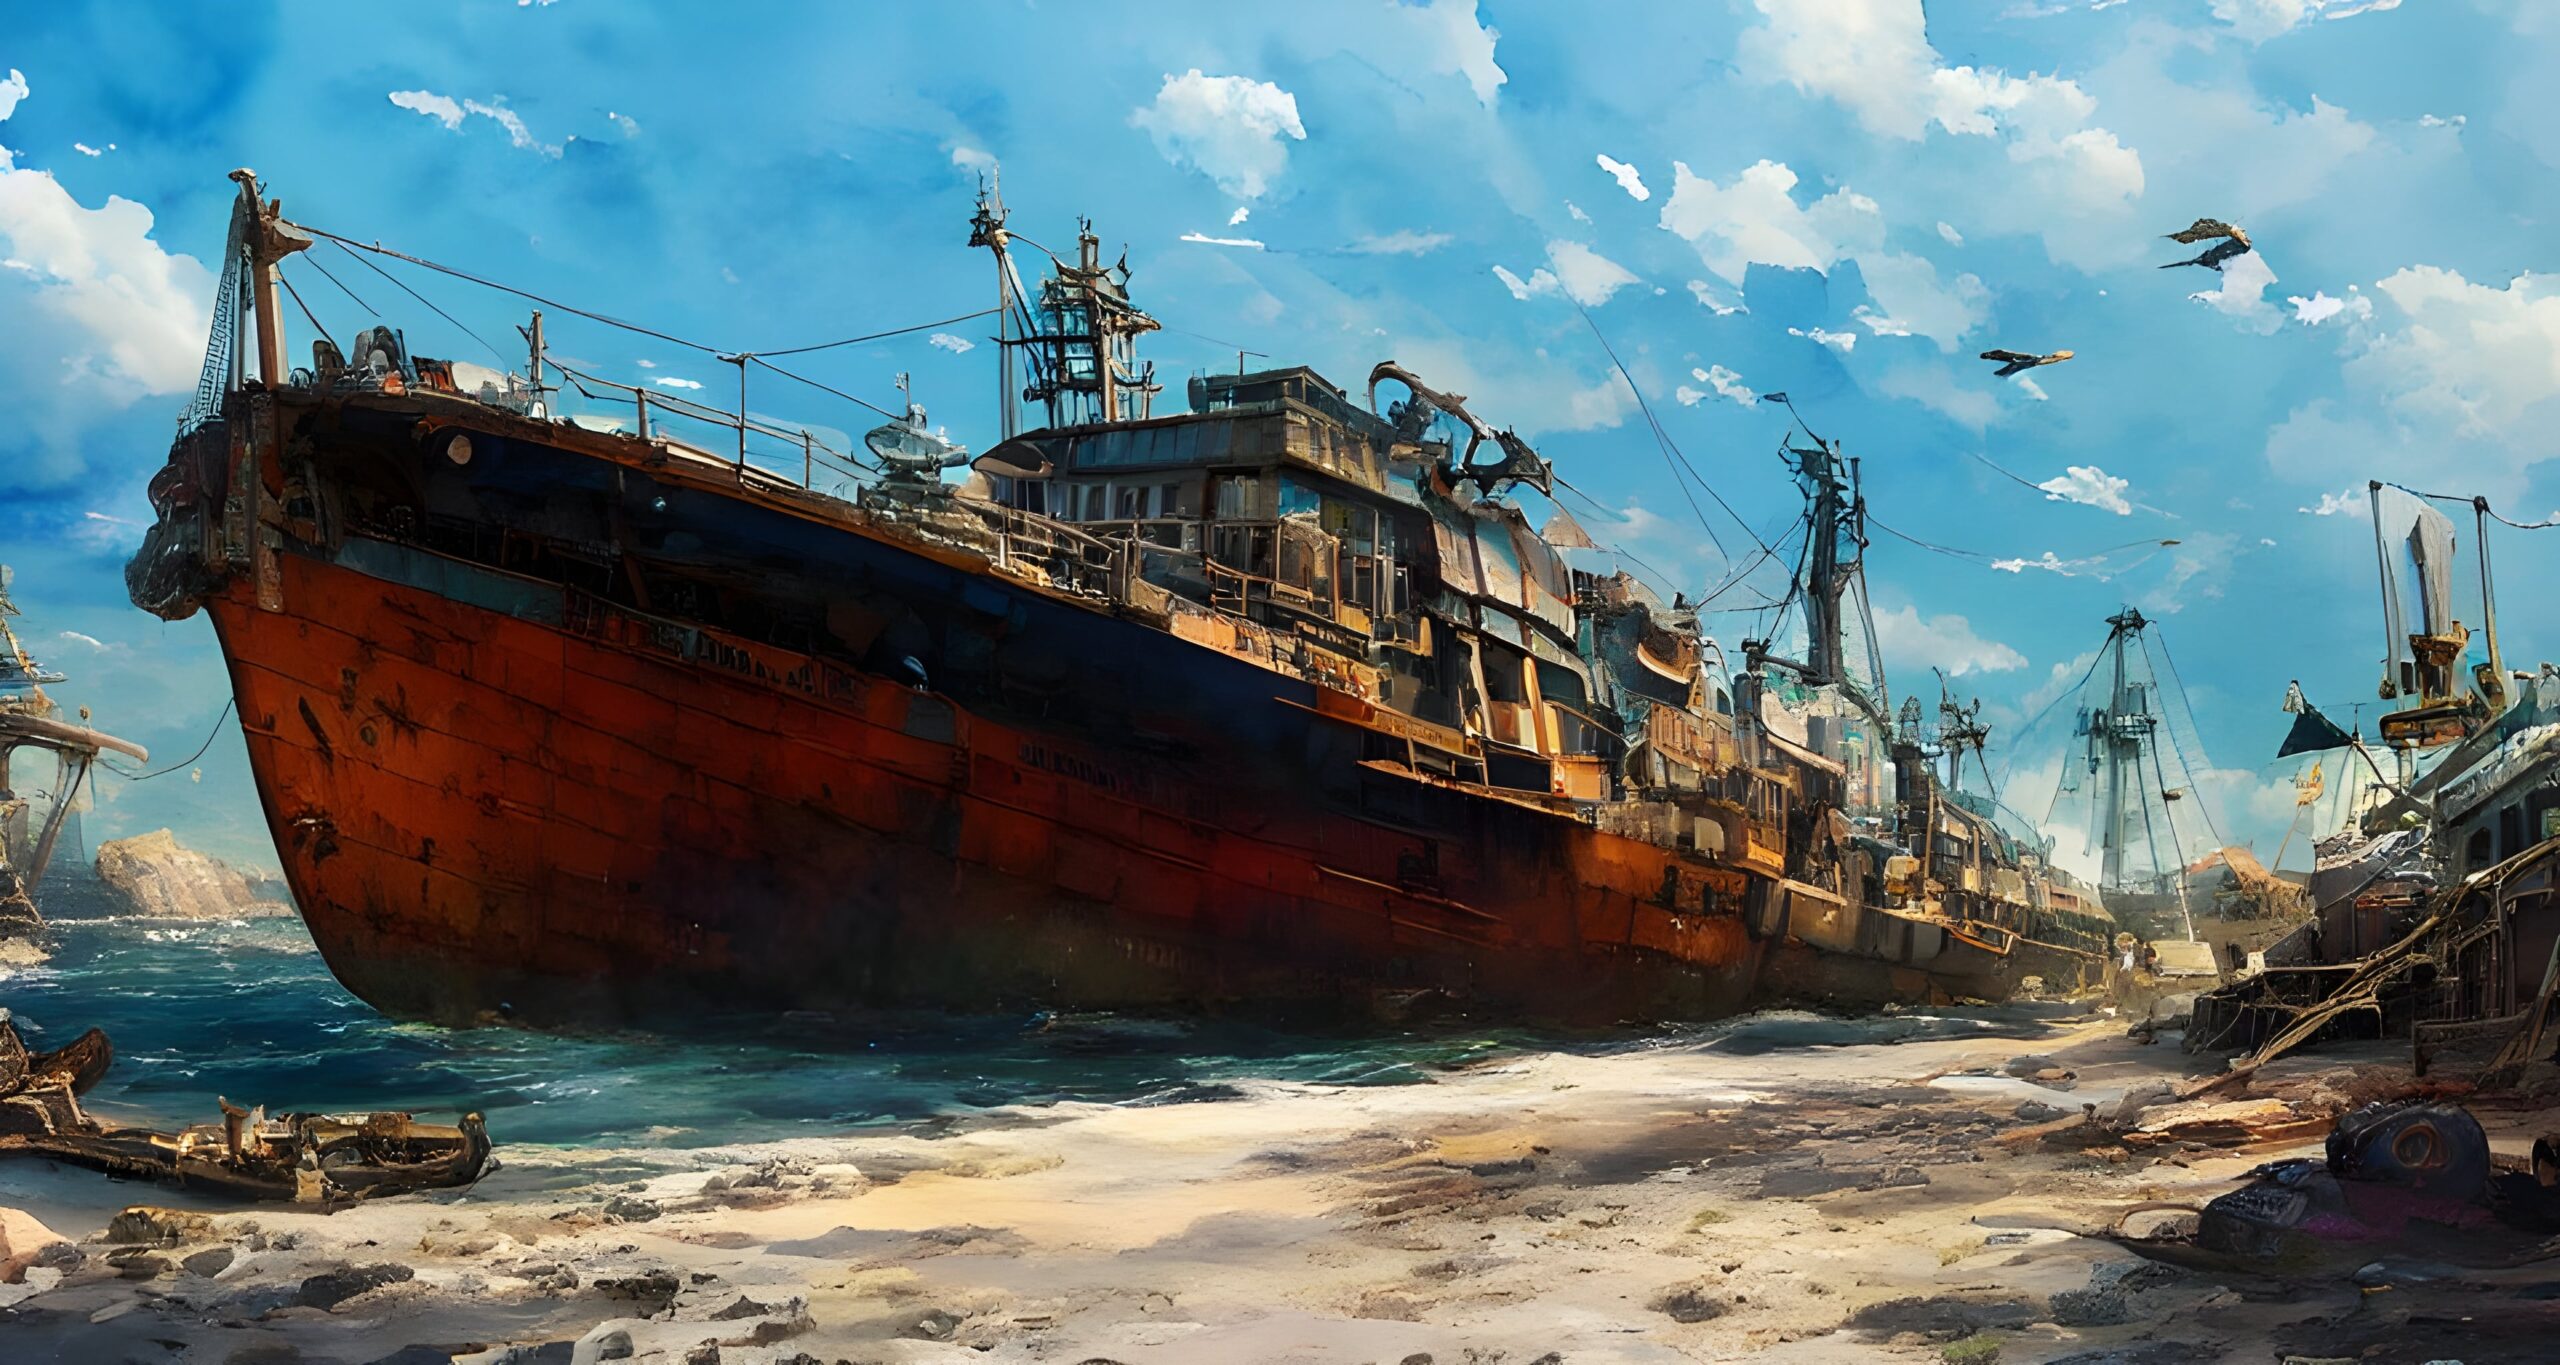 Shipwreck at the Shore